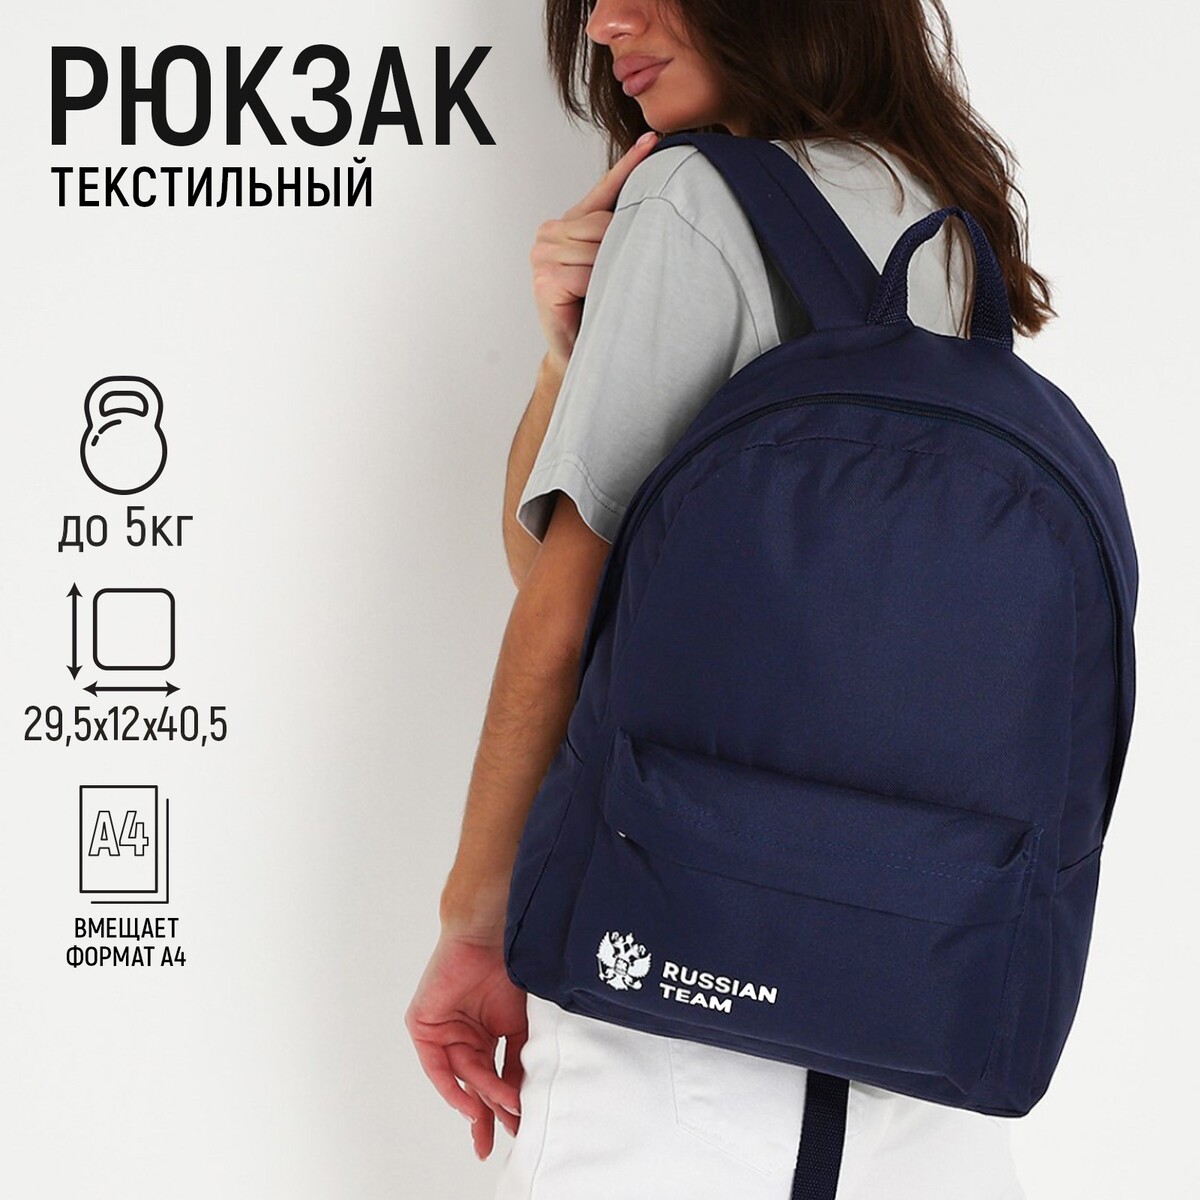 Рюкзак текстильный россия, с карманом, цвет синий наличники центральная россия